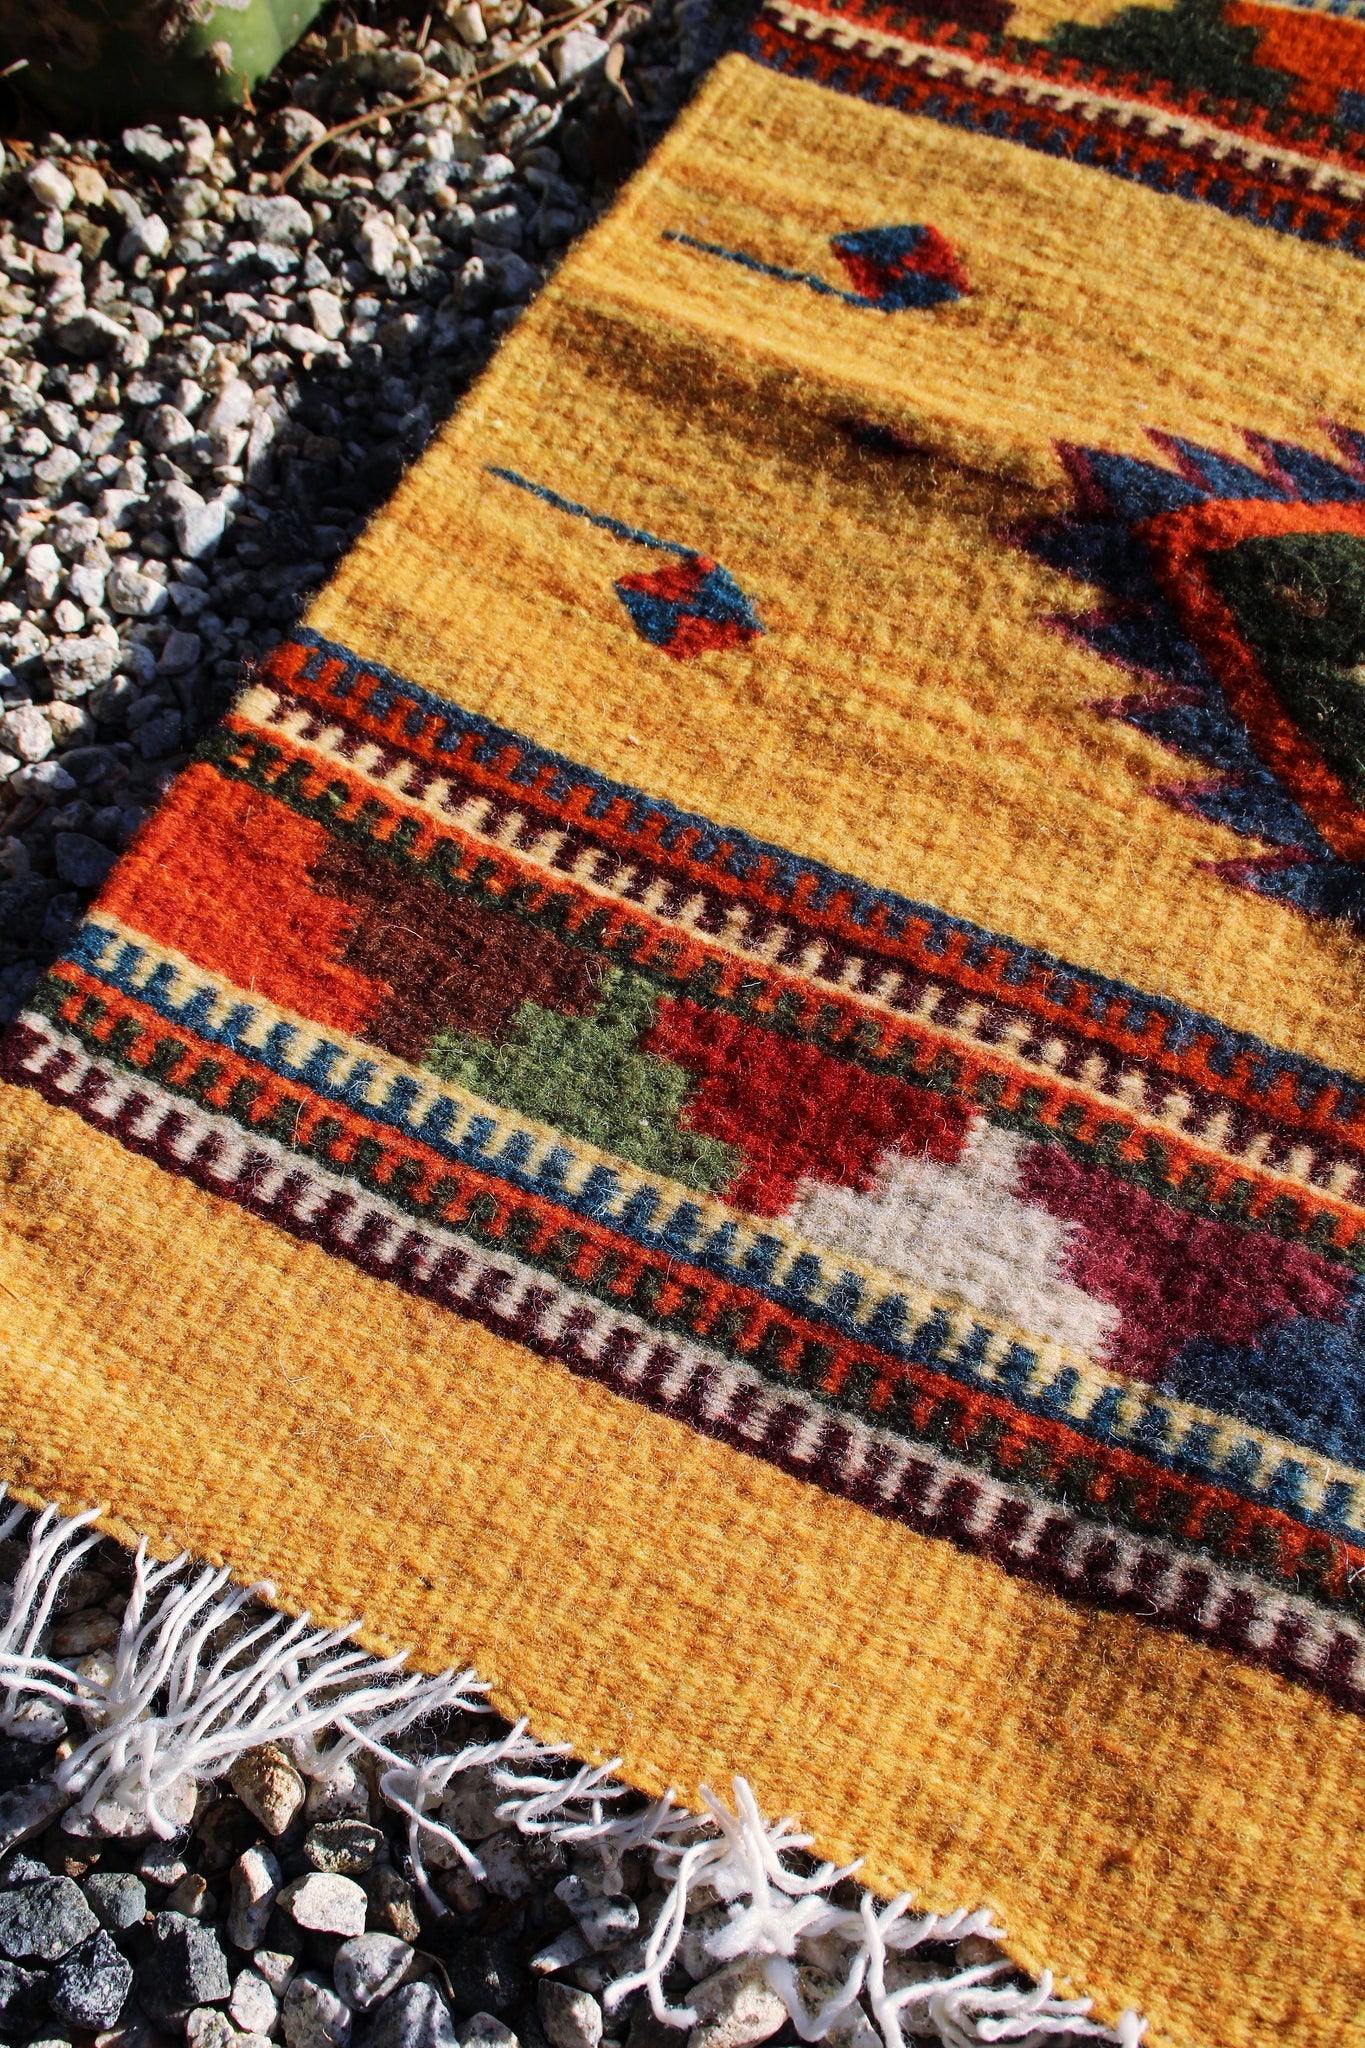 Las Pirámides y el Sol Tapete Small Wool Rug